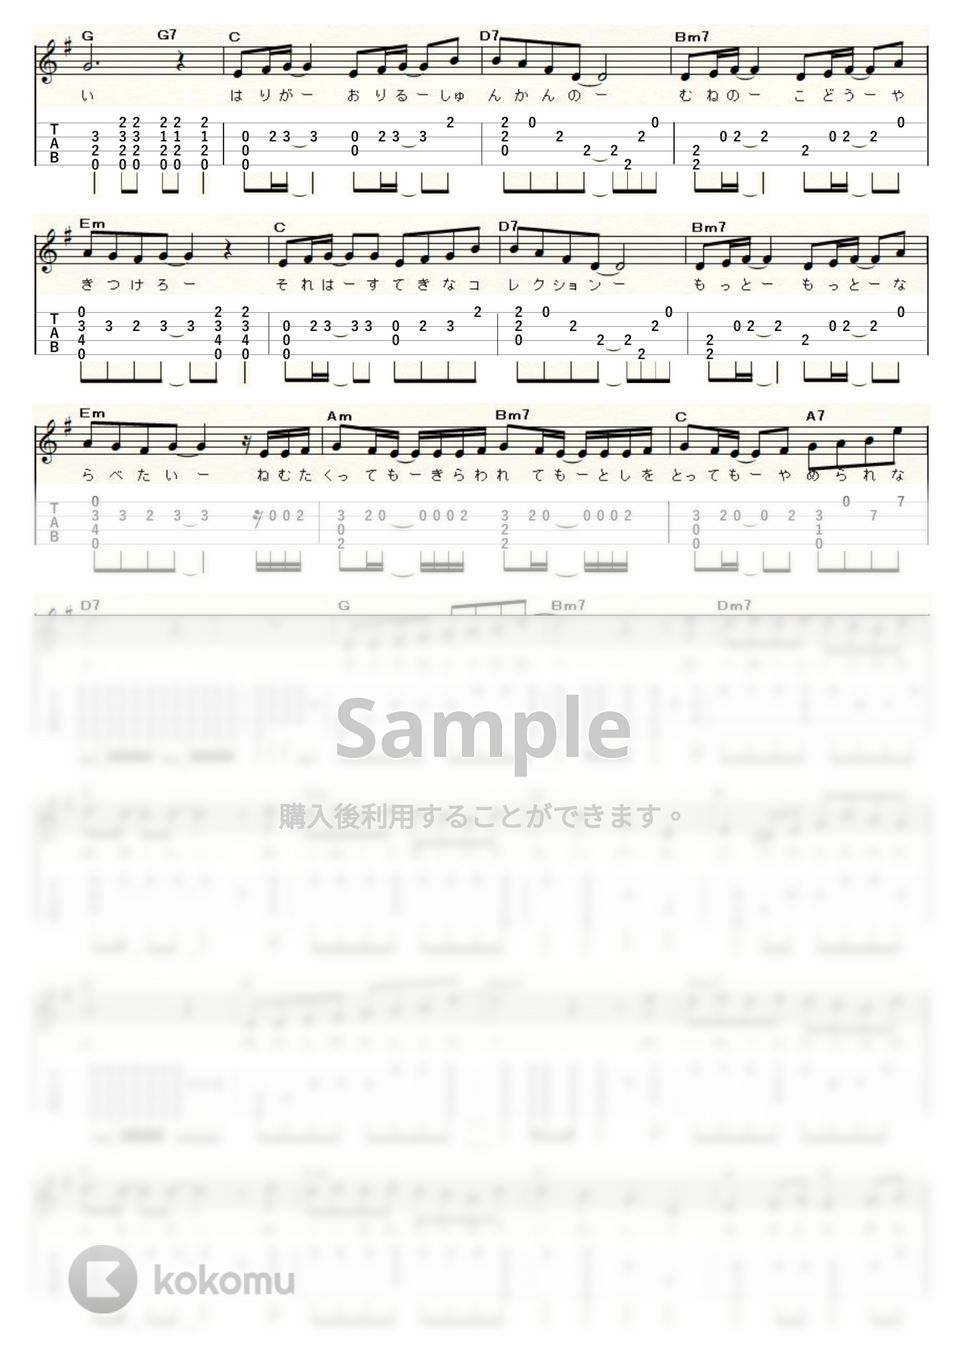 プリンセスプリンセス - DIAMONDS (Low-G) by ukulelepapa